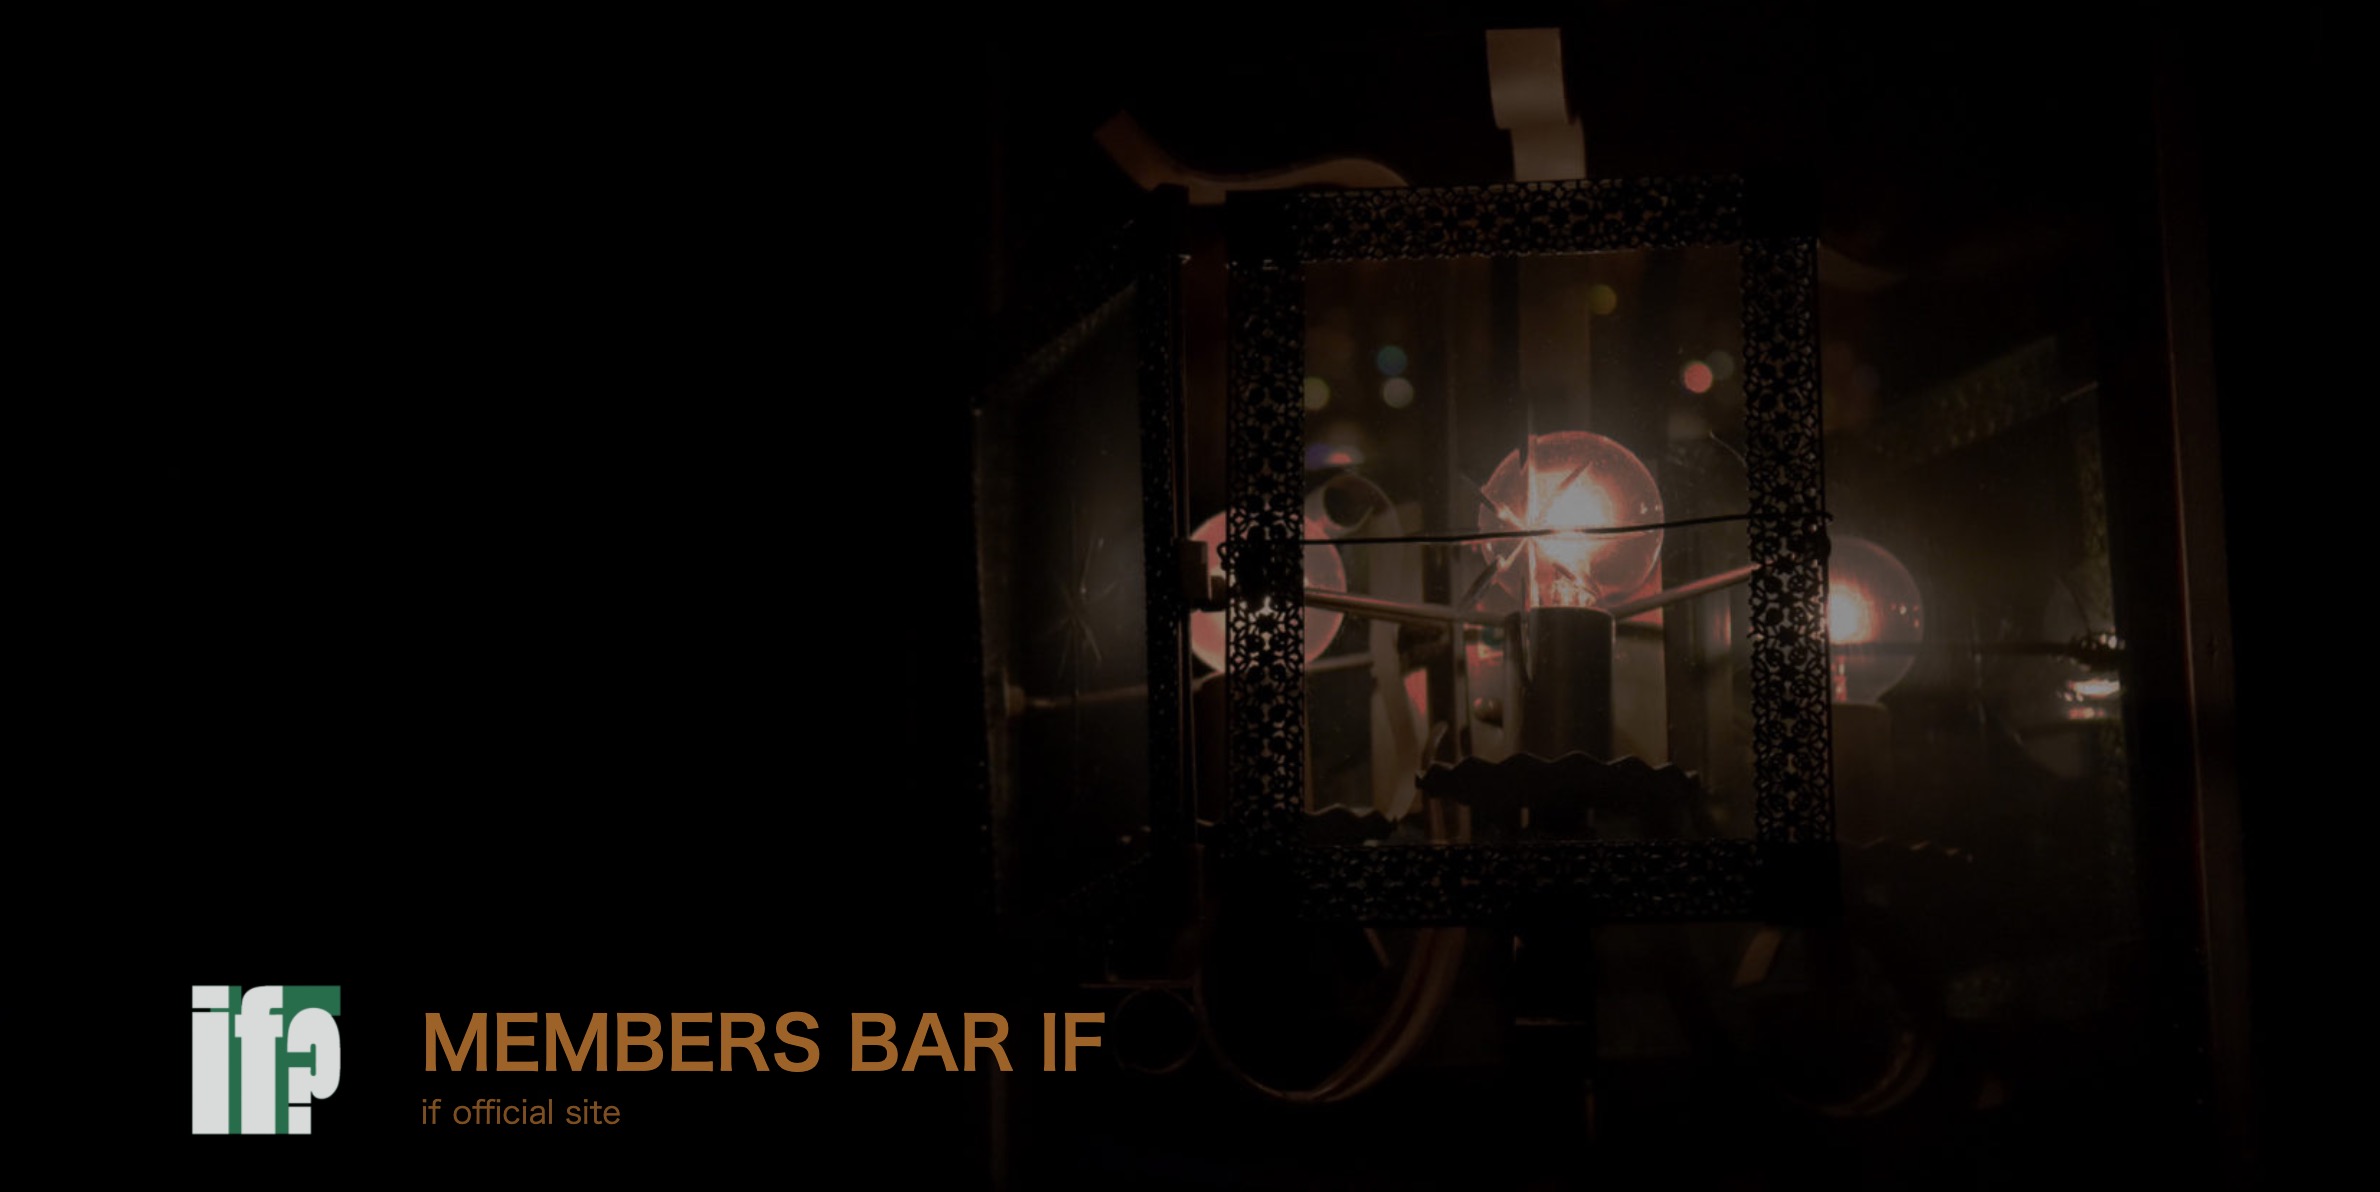 Member’s Bar if